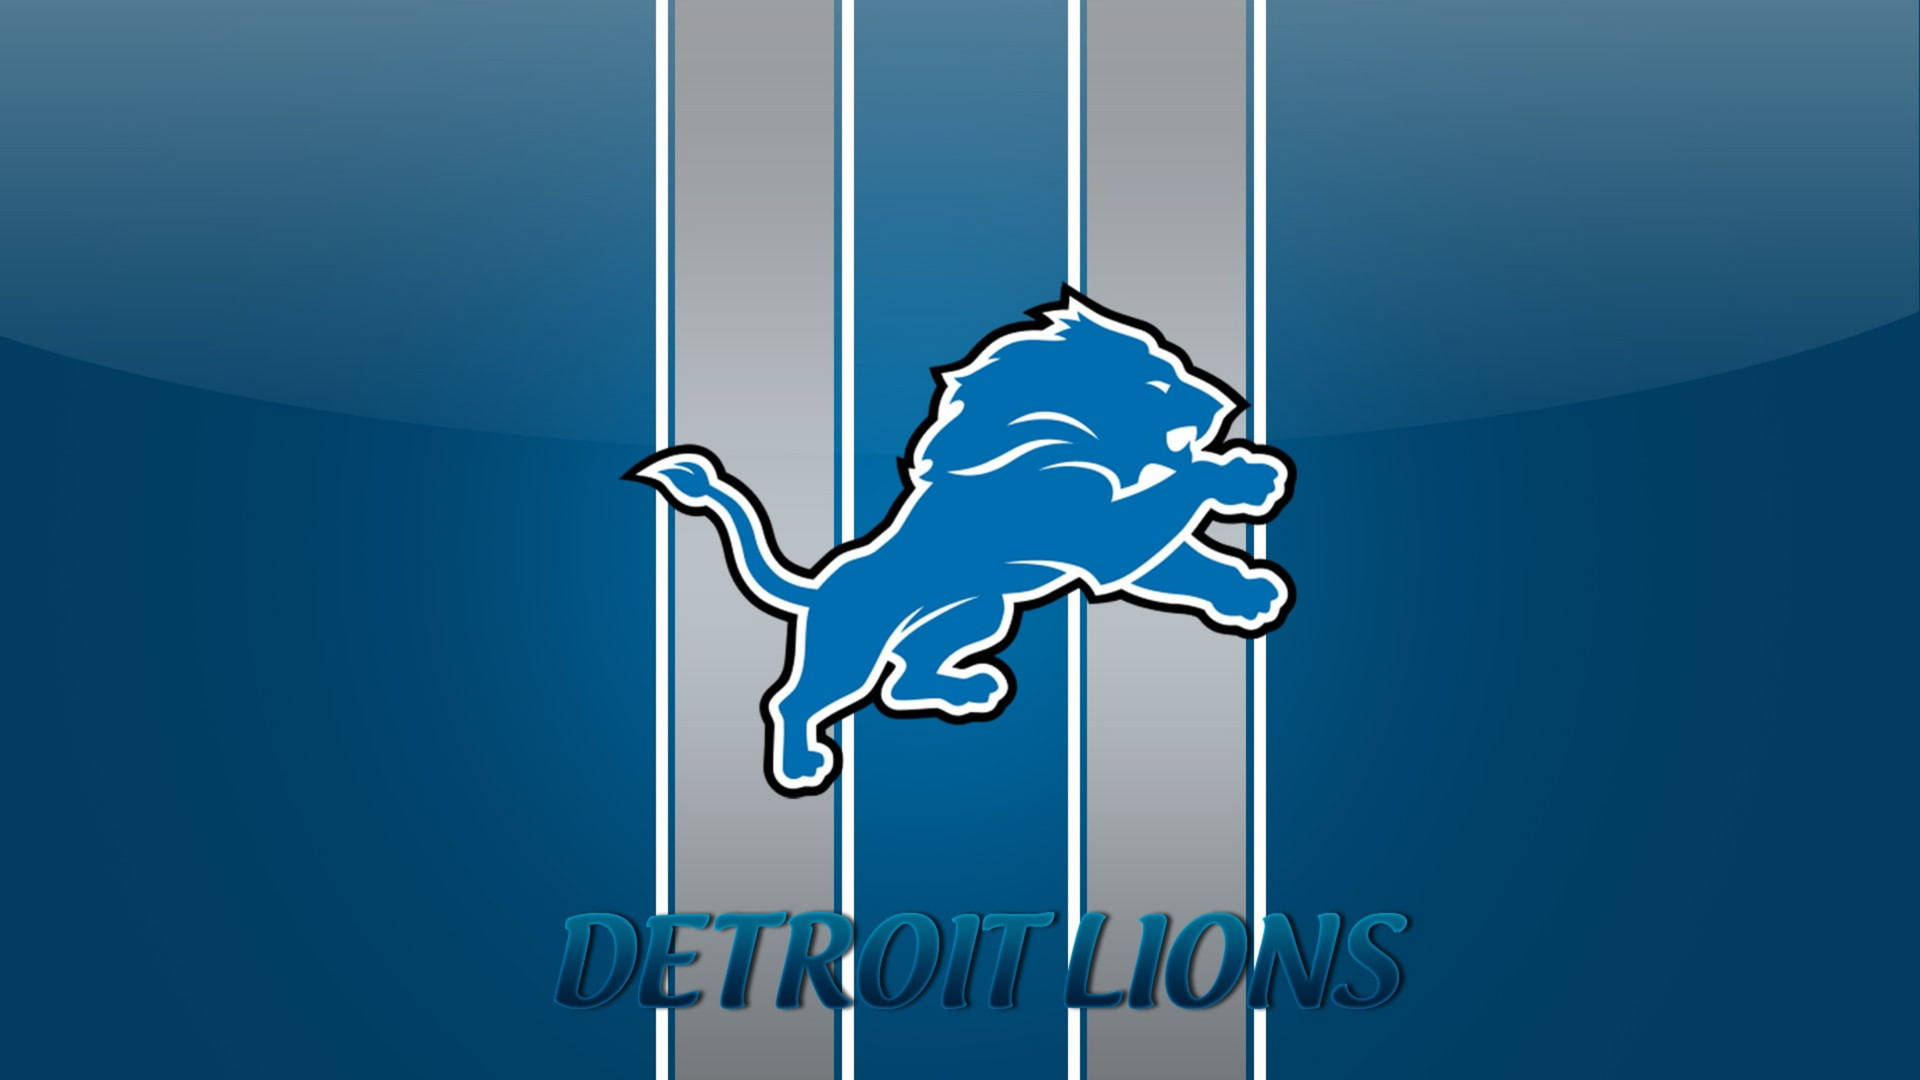 Imágenes De Detroit Lions